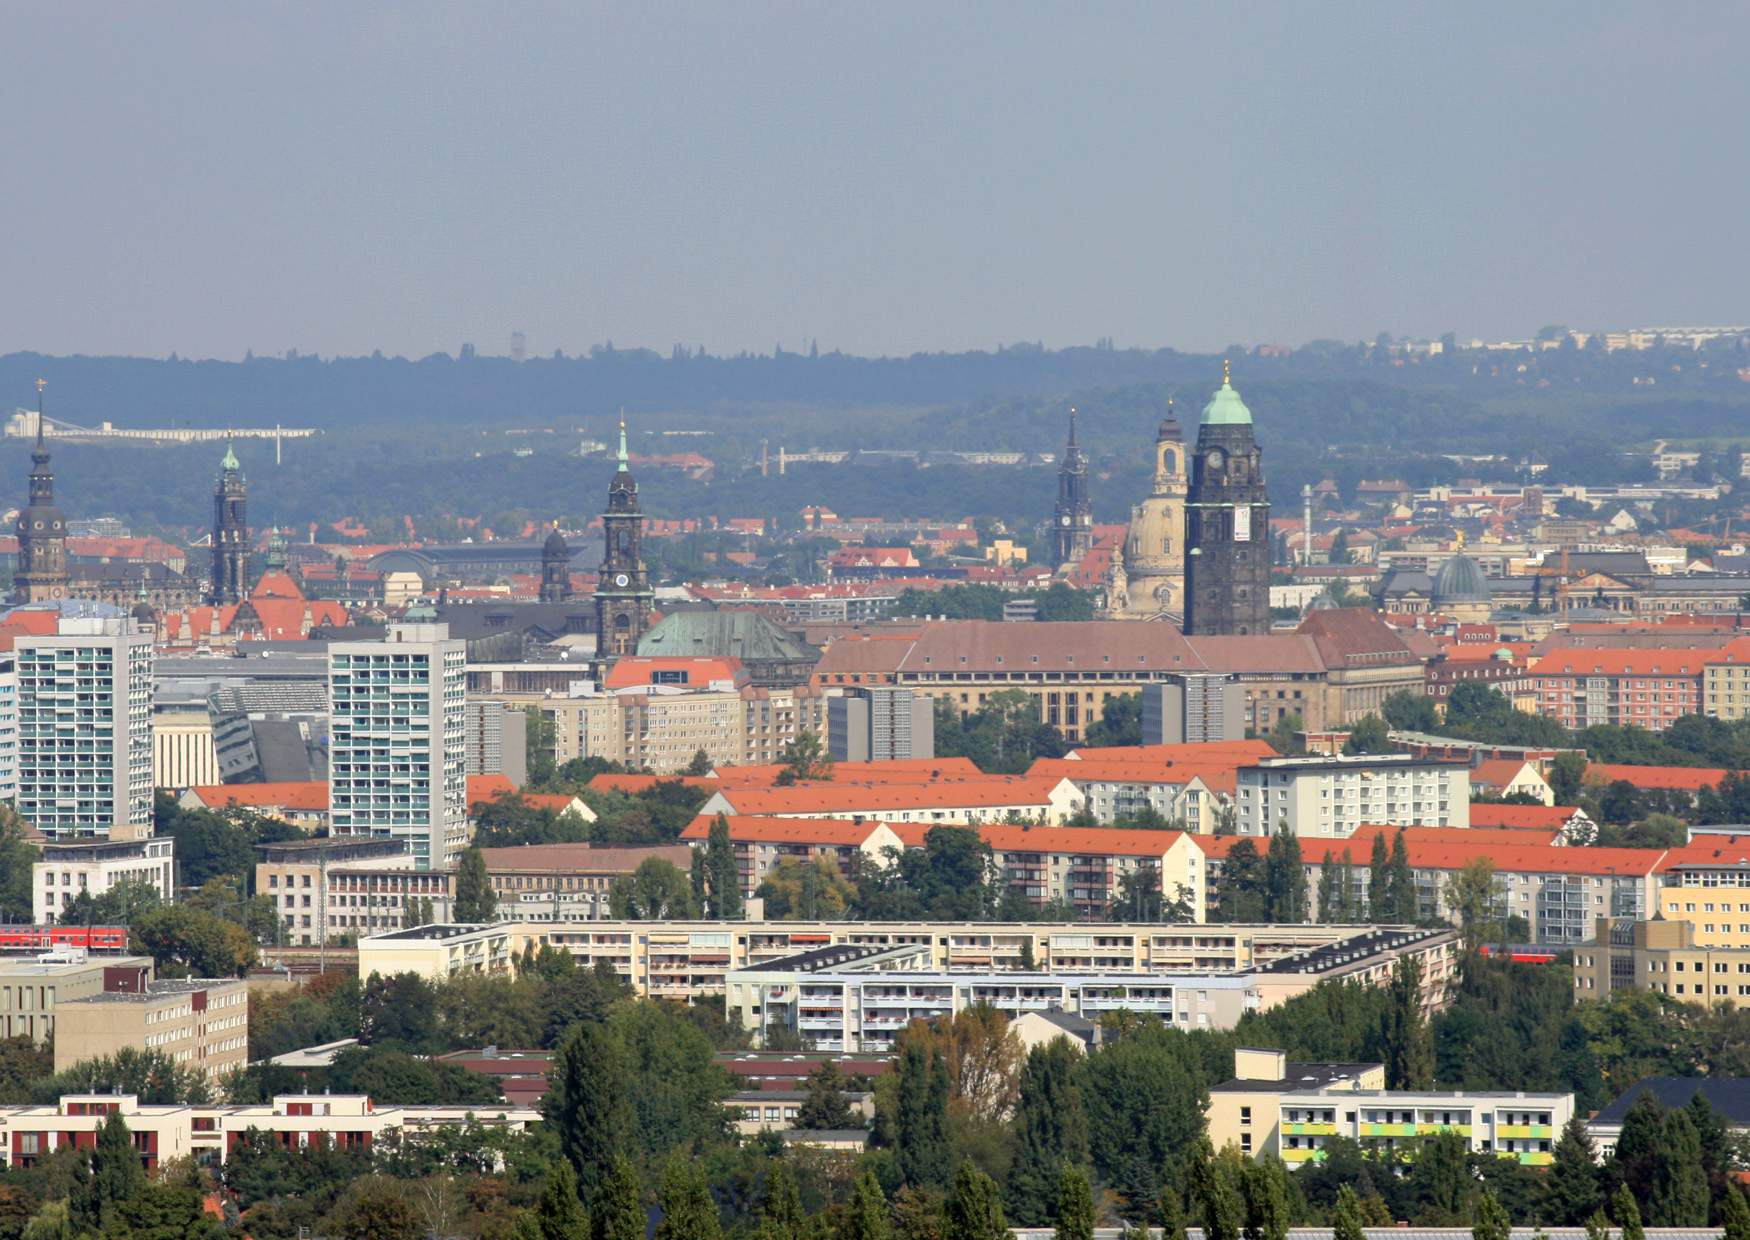 Sehenswürdigkeiten in der Dresdener Altstadt, die Frauenkirche